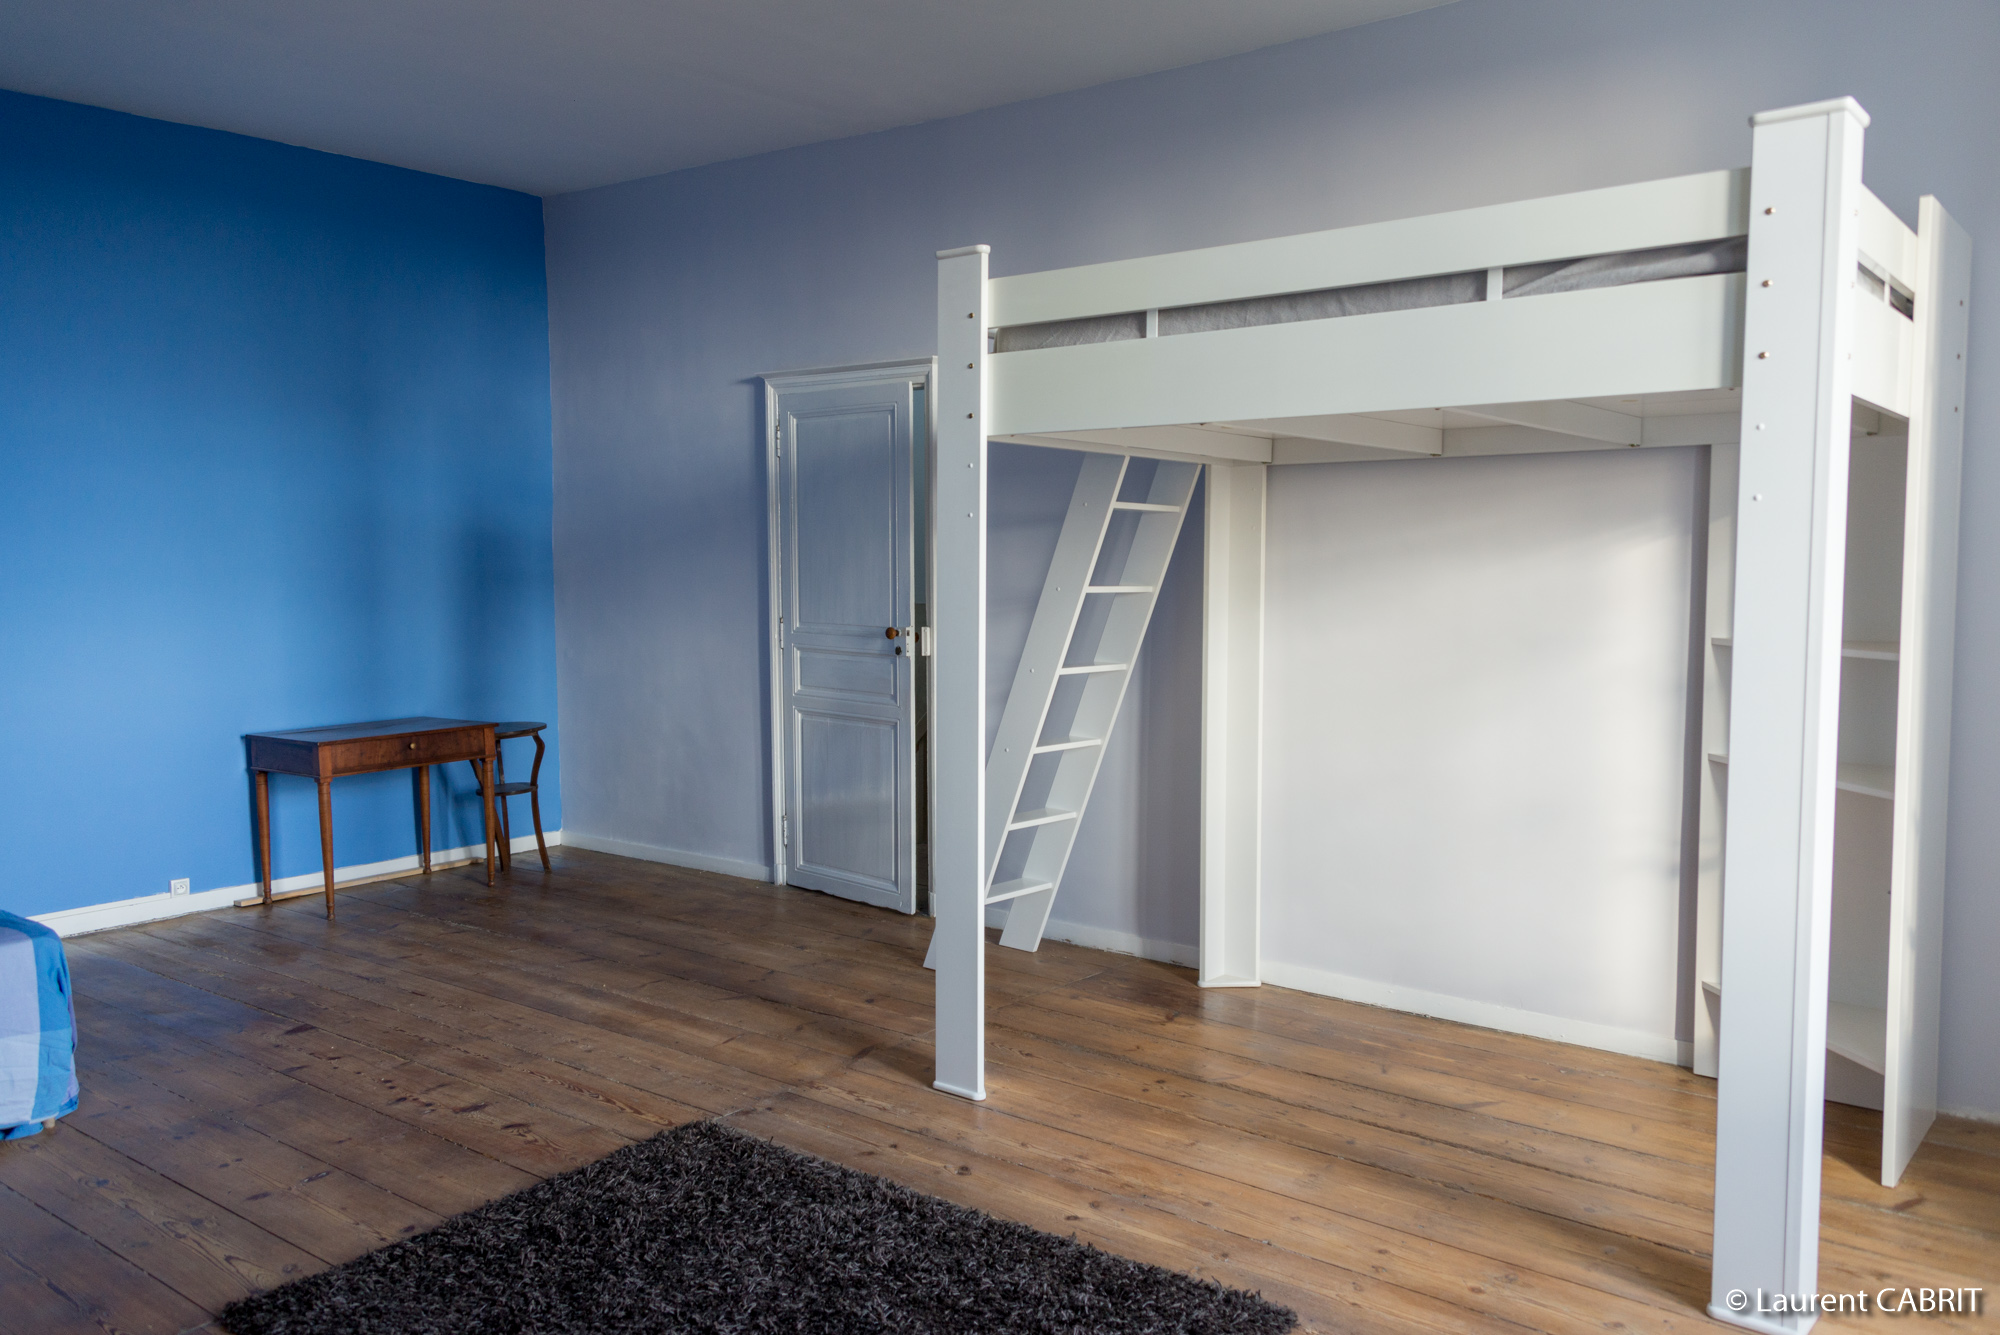 Chambre Bleue 34 m² - Lit Double 140x200 + Lit Double 140x200 Mezzanine - [Location Langoiran Bordaux Ligassonne]